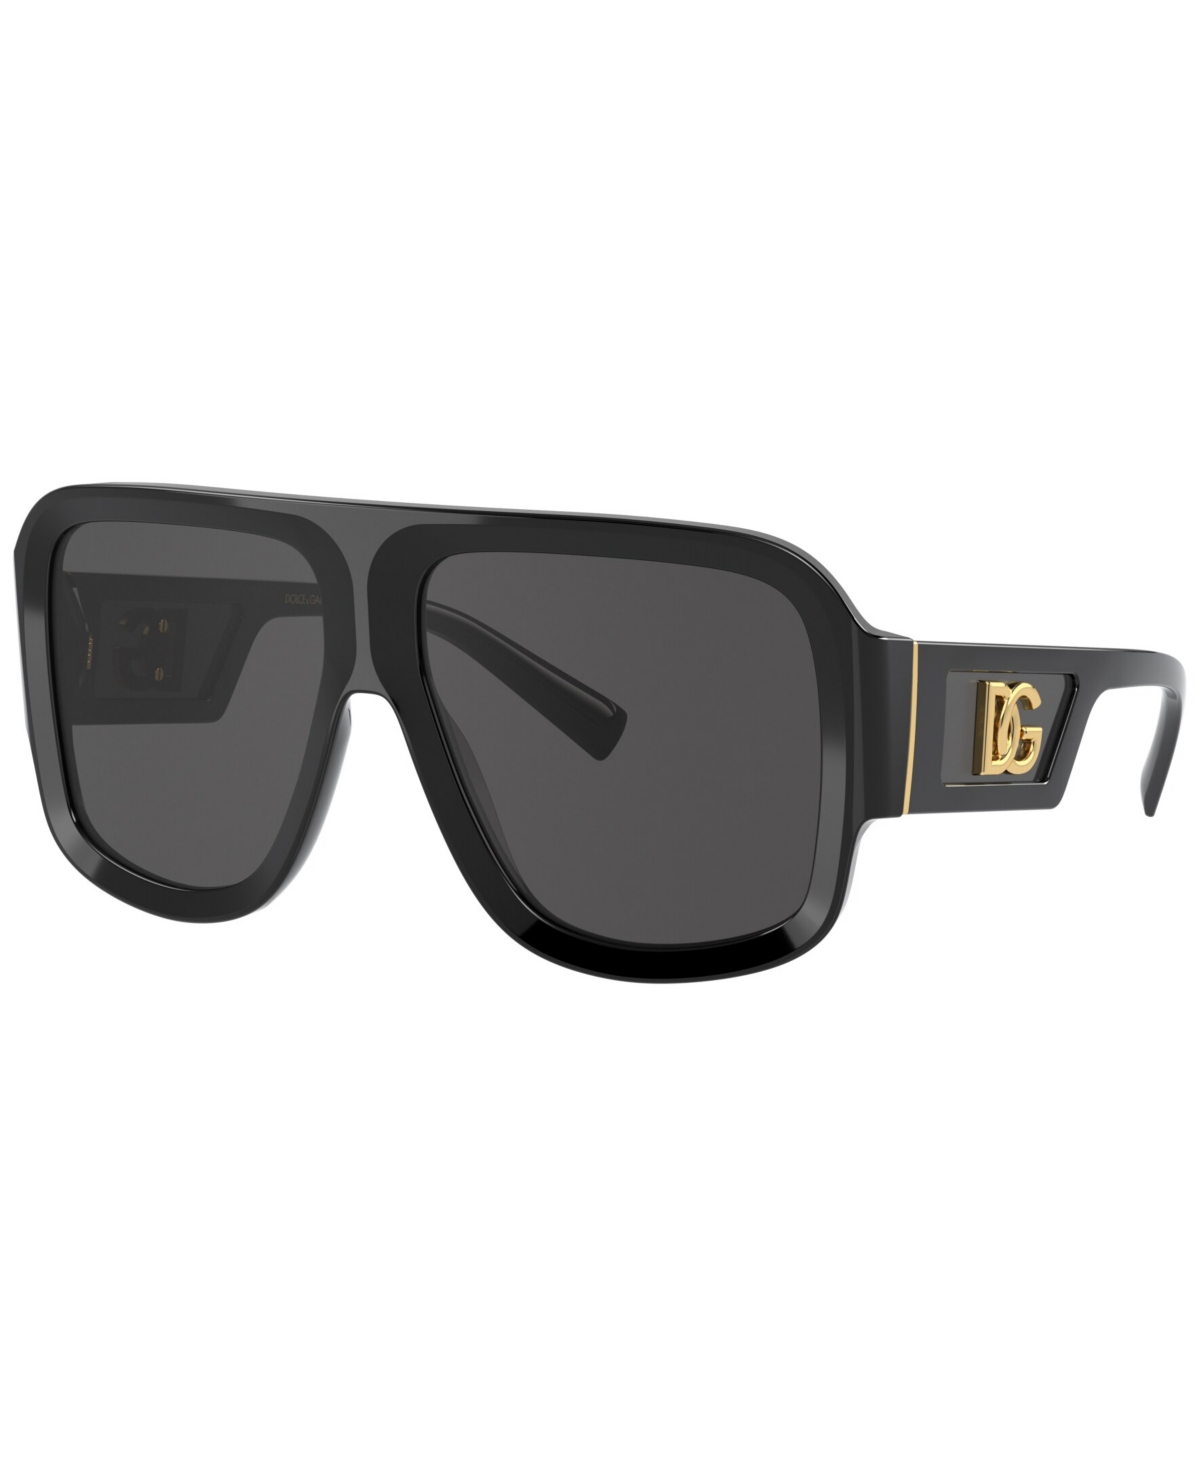 Dolce&Gabbana Men's Sunglasses, DG4401 58 - Black